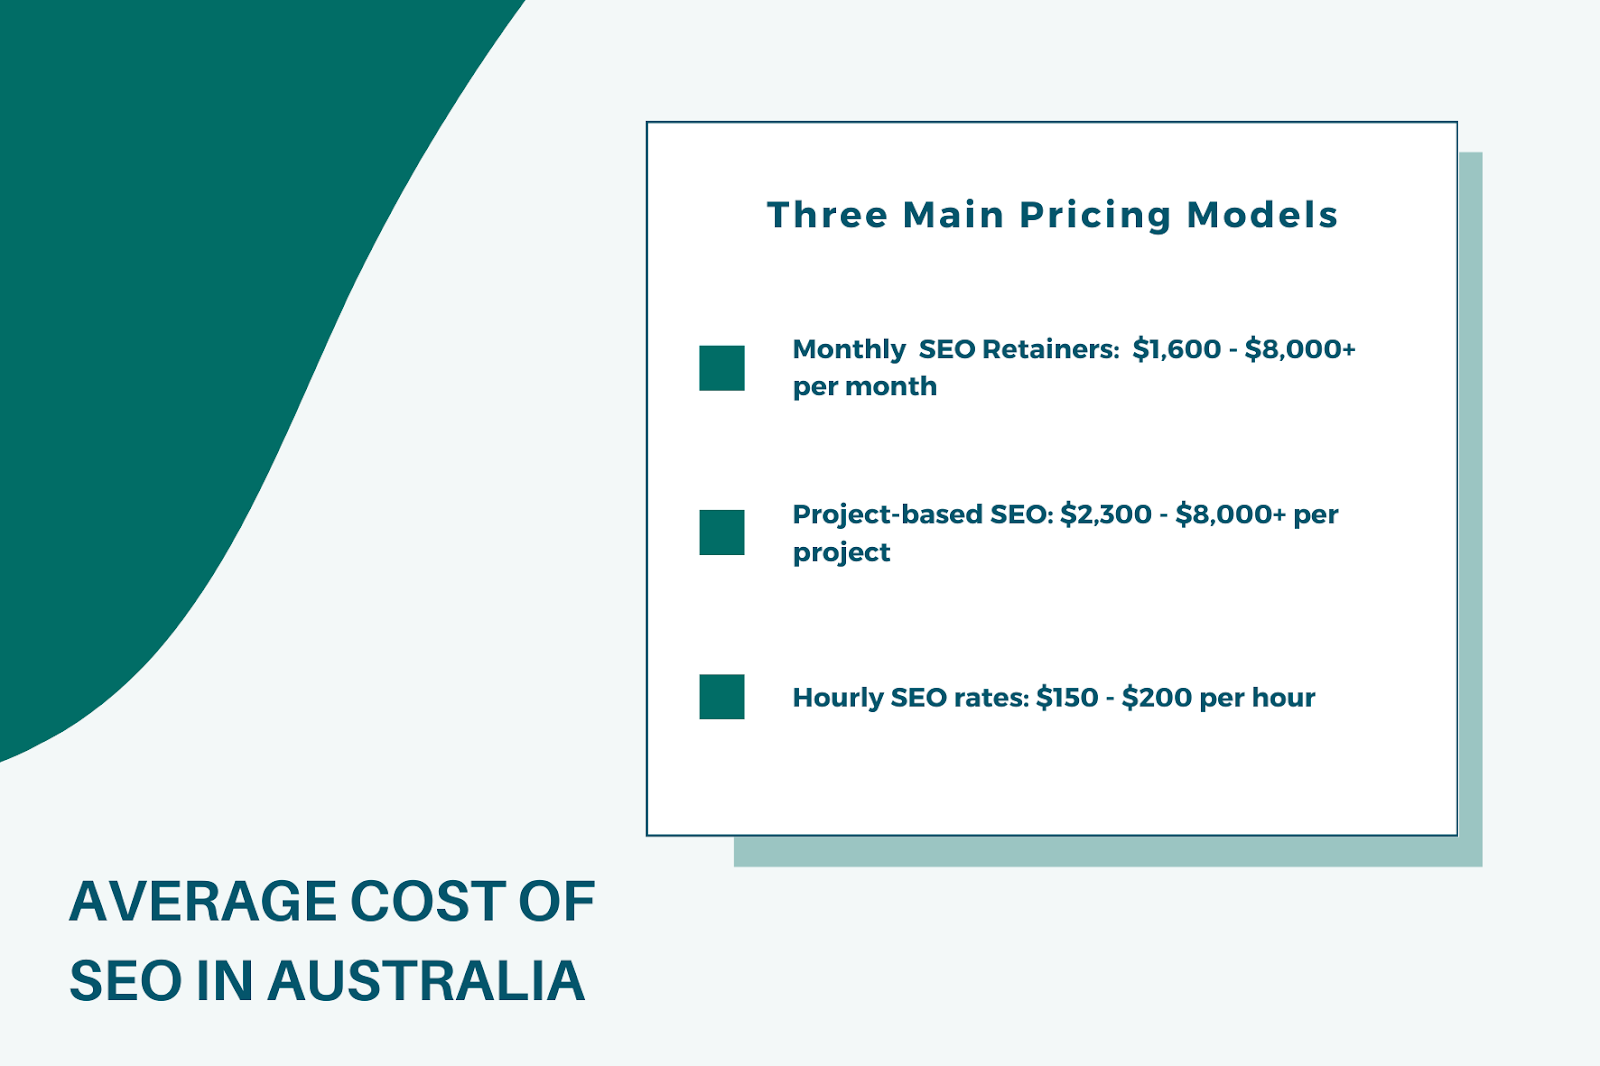 Average cost of SEO in Australia